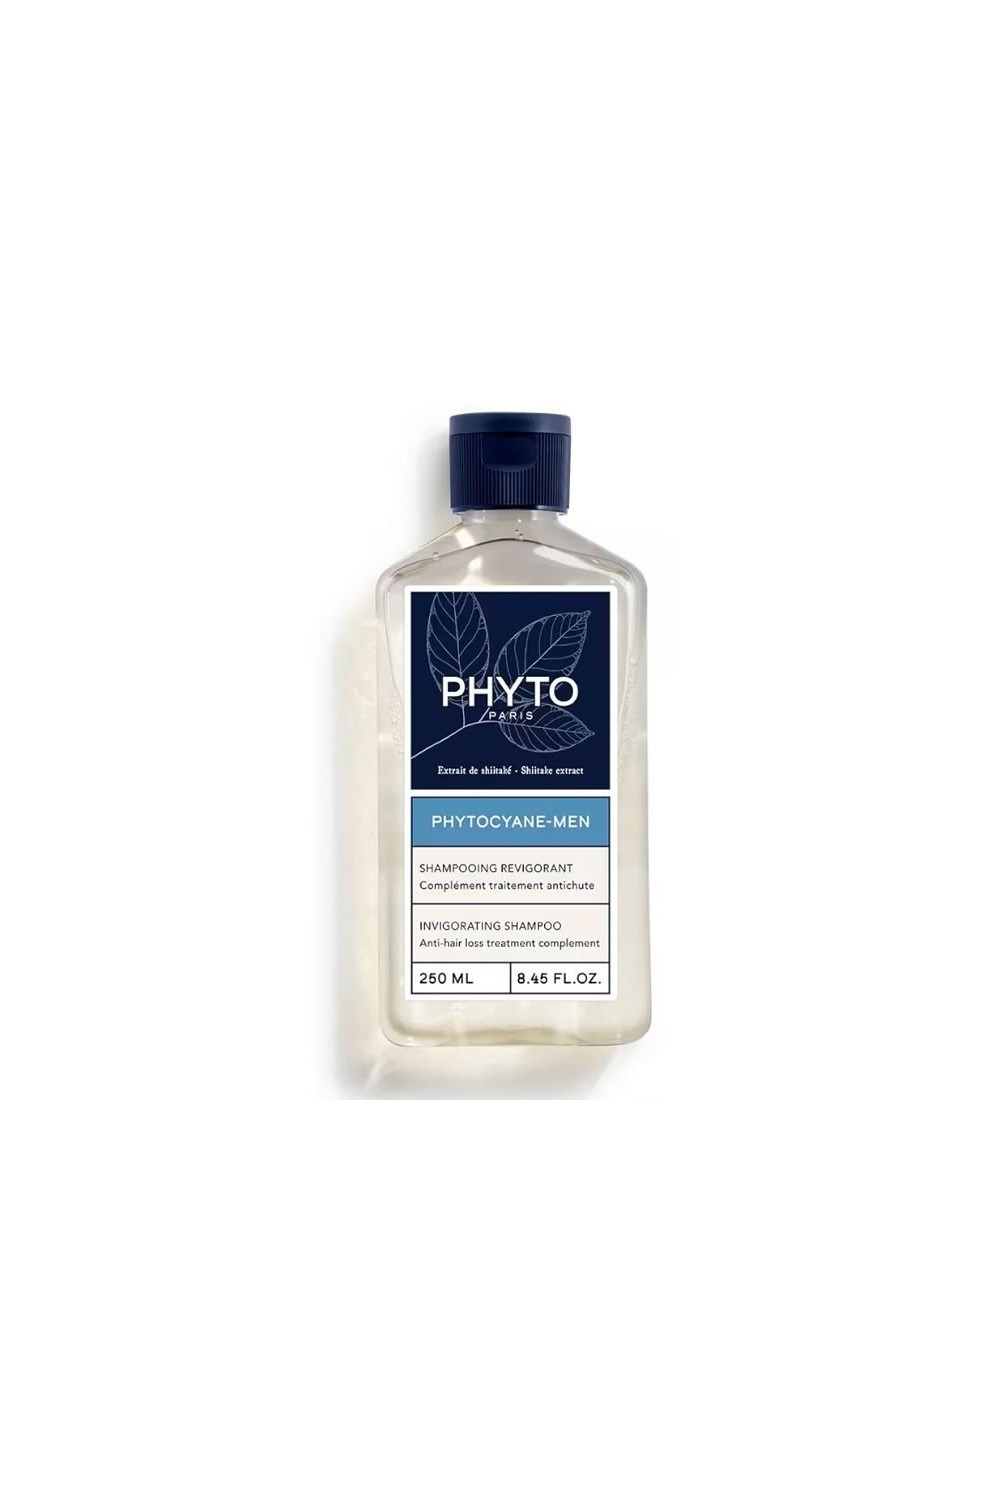 PHYTO PARIS - Phyto Phytocyane-Men Revitalising Shampoo 250ml